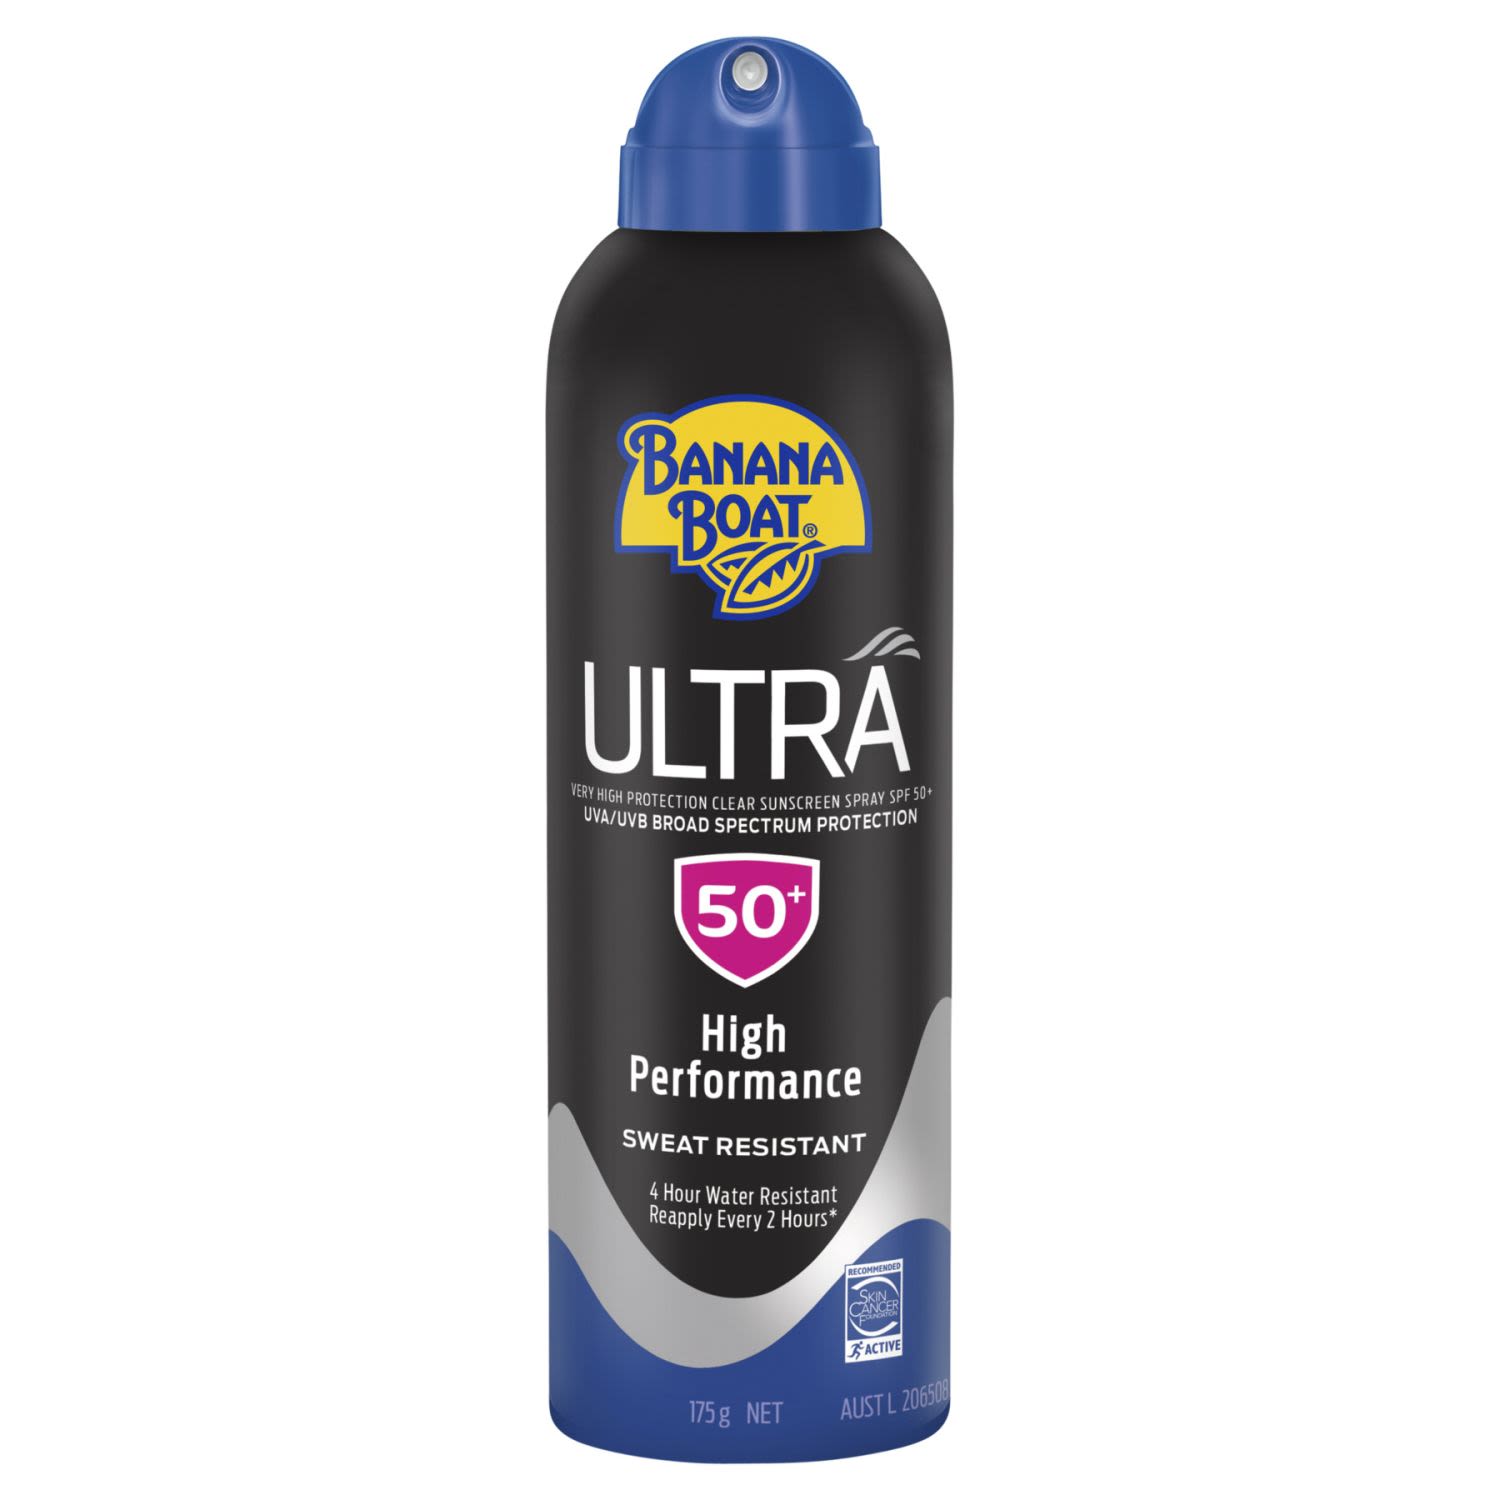 Banana Boat Ultra Clear SPF 50 Sunscreen Spray, 175 Gram